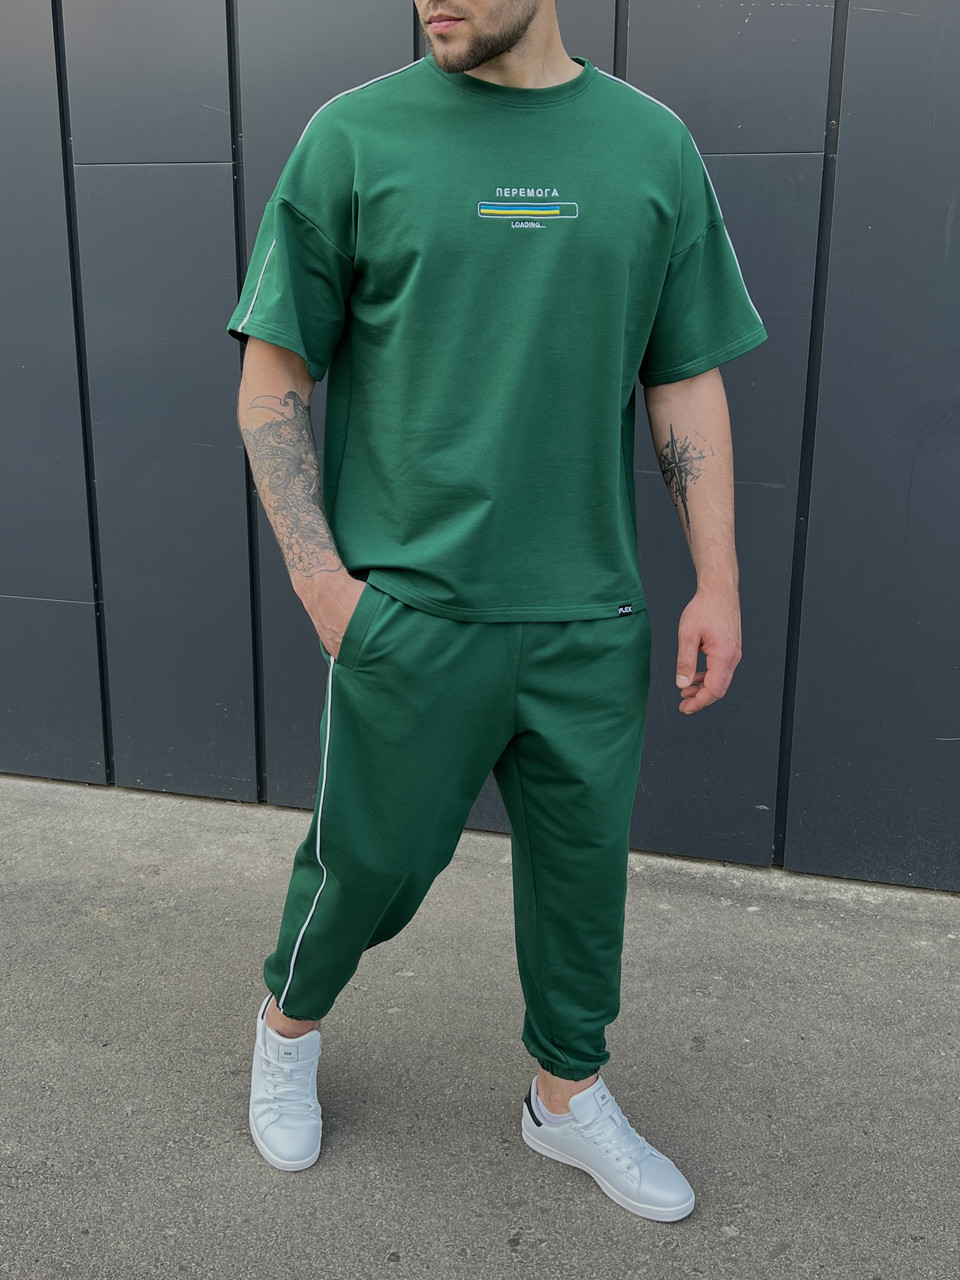 Летний комплект футболка и штаны мужские зеленый модель Перемога TURWEAR - Фото 5